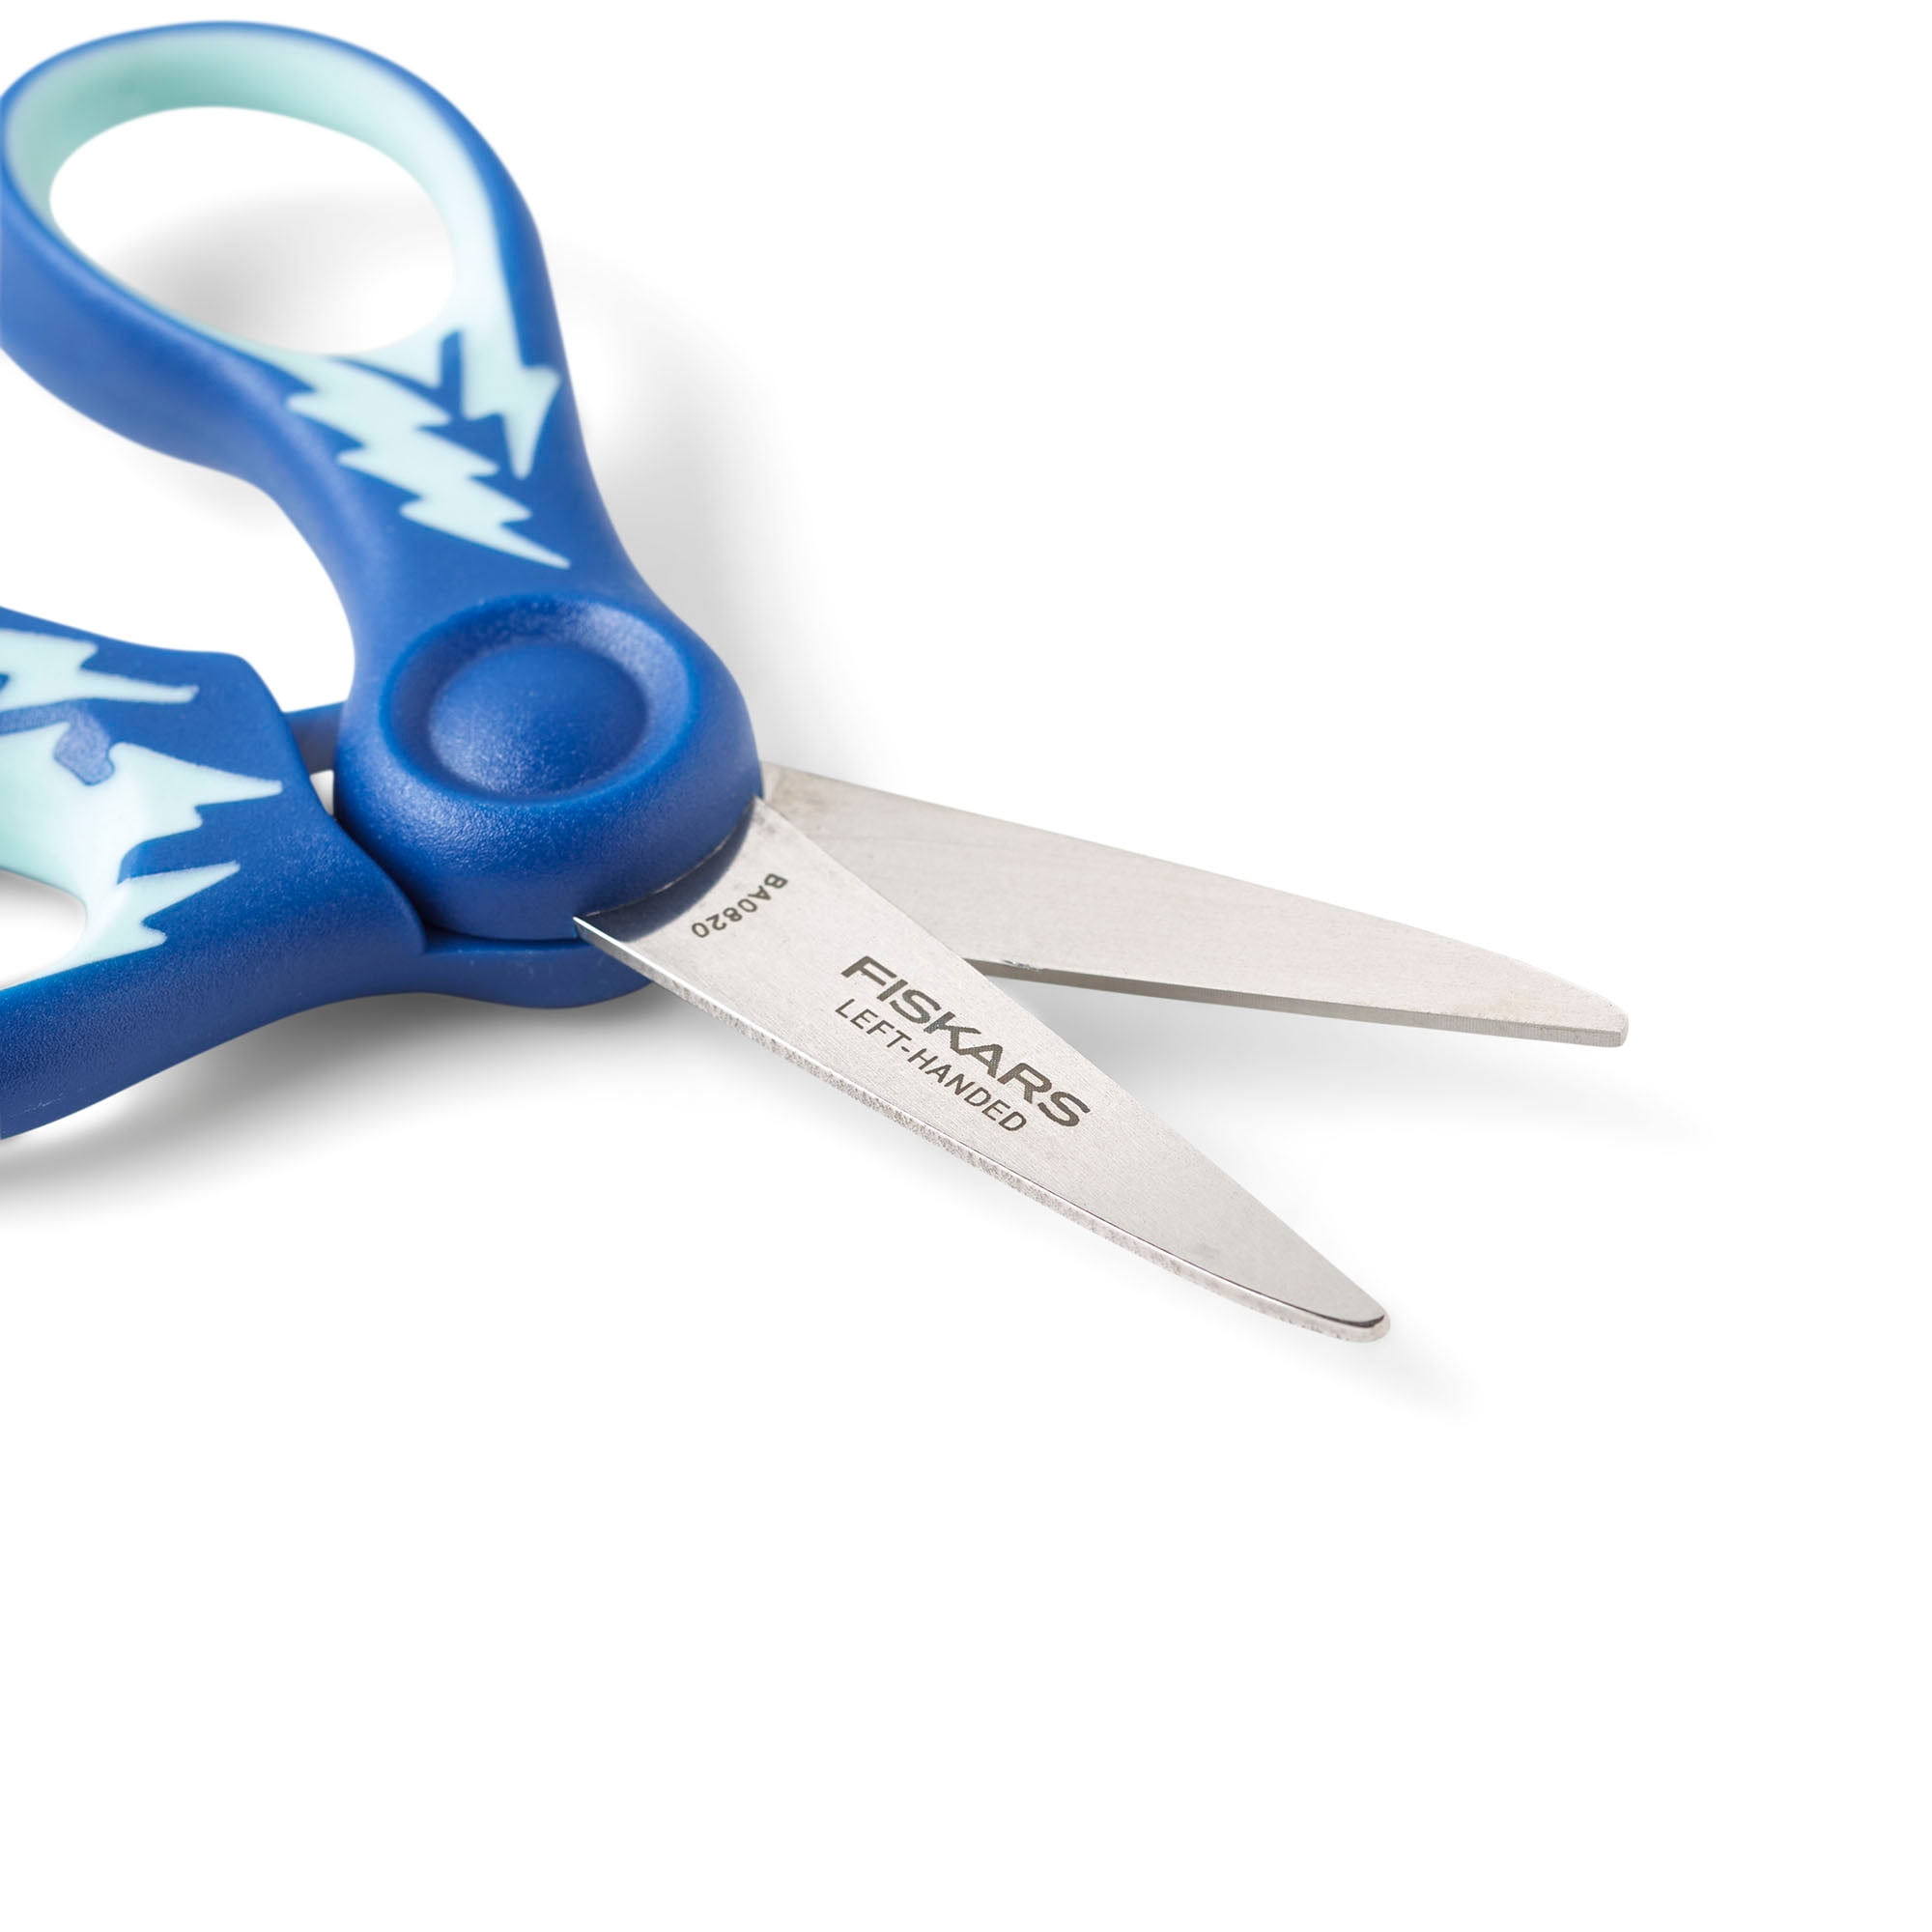 Fiskars Left Handed Scissors for Kids, School Scissors, Soft Grip